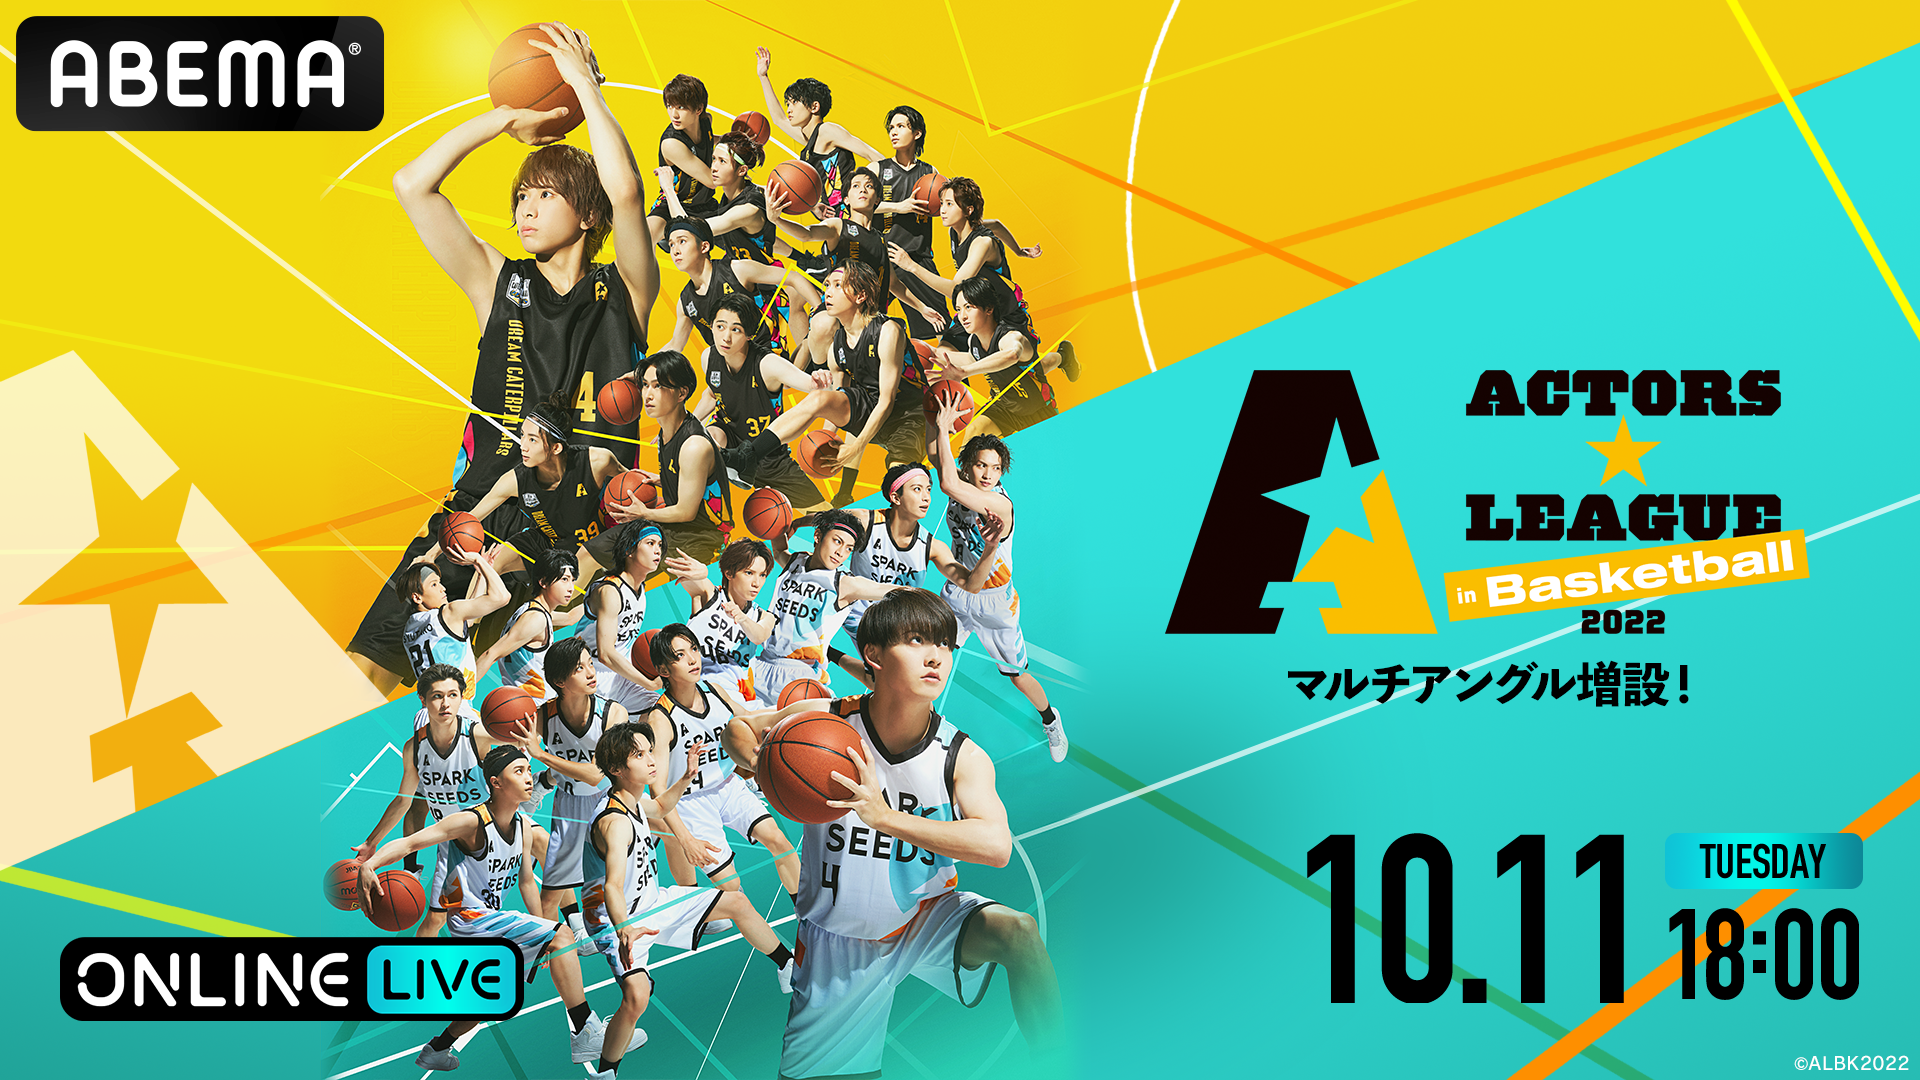 信頼】 ACTORS LEAGUE 2022 in basketball BluRay azuraftu.mg